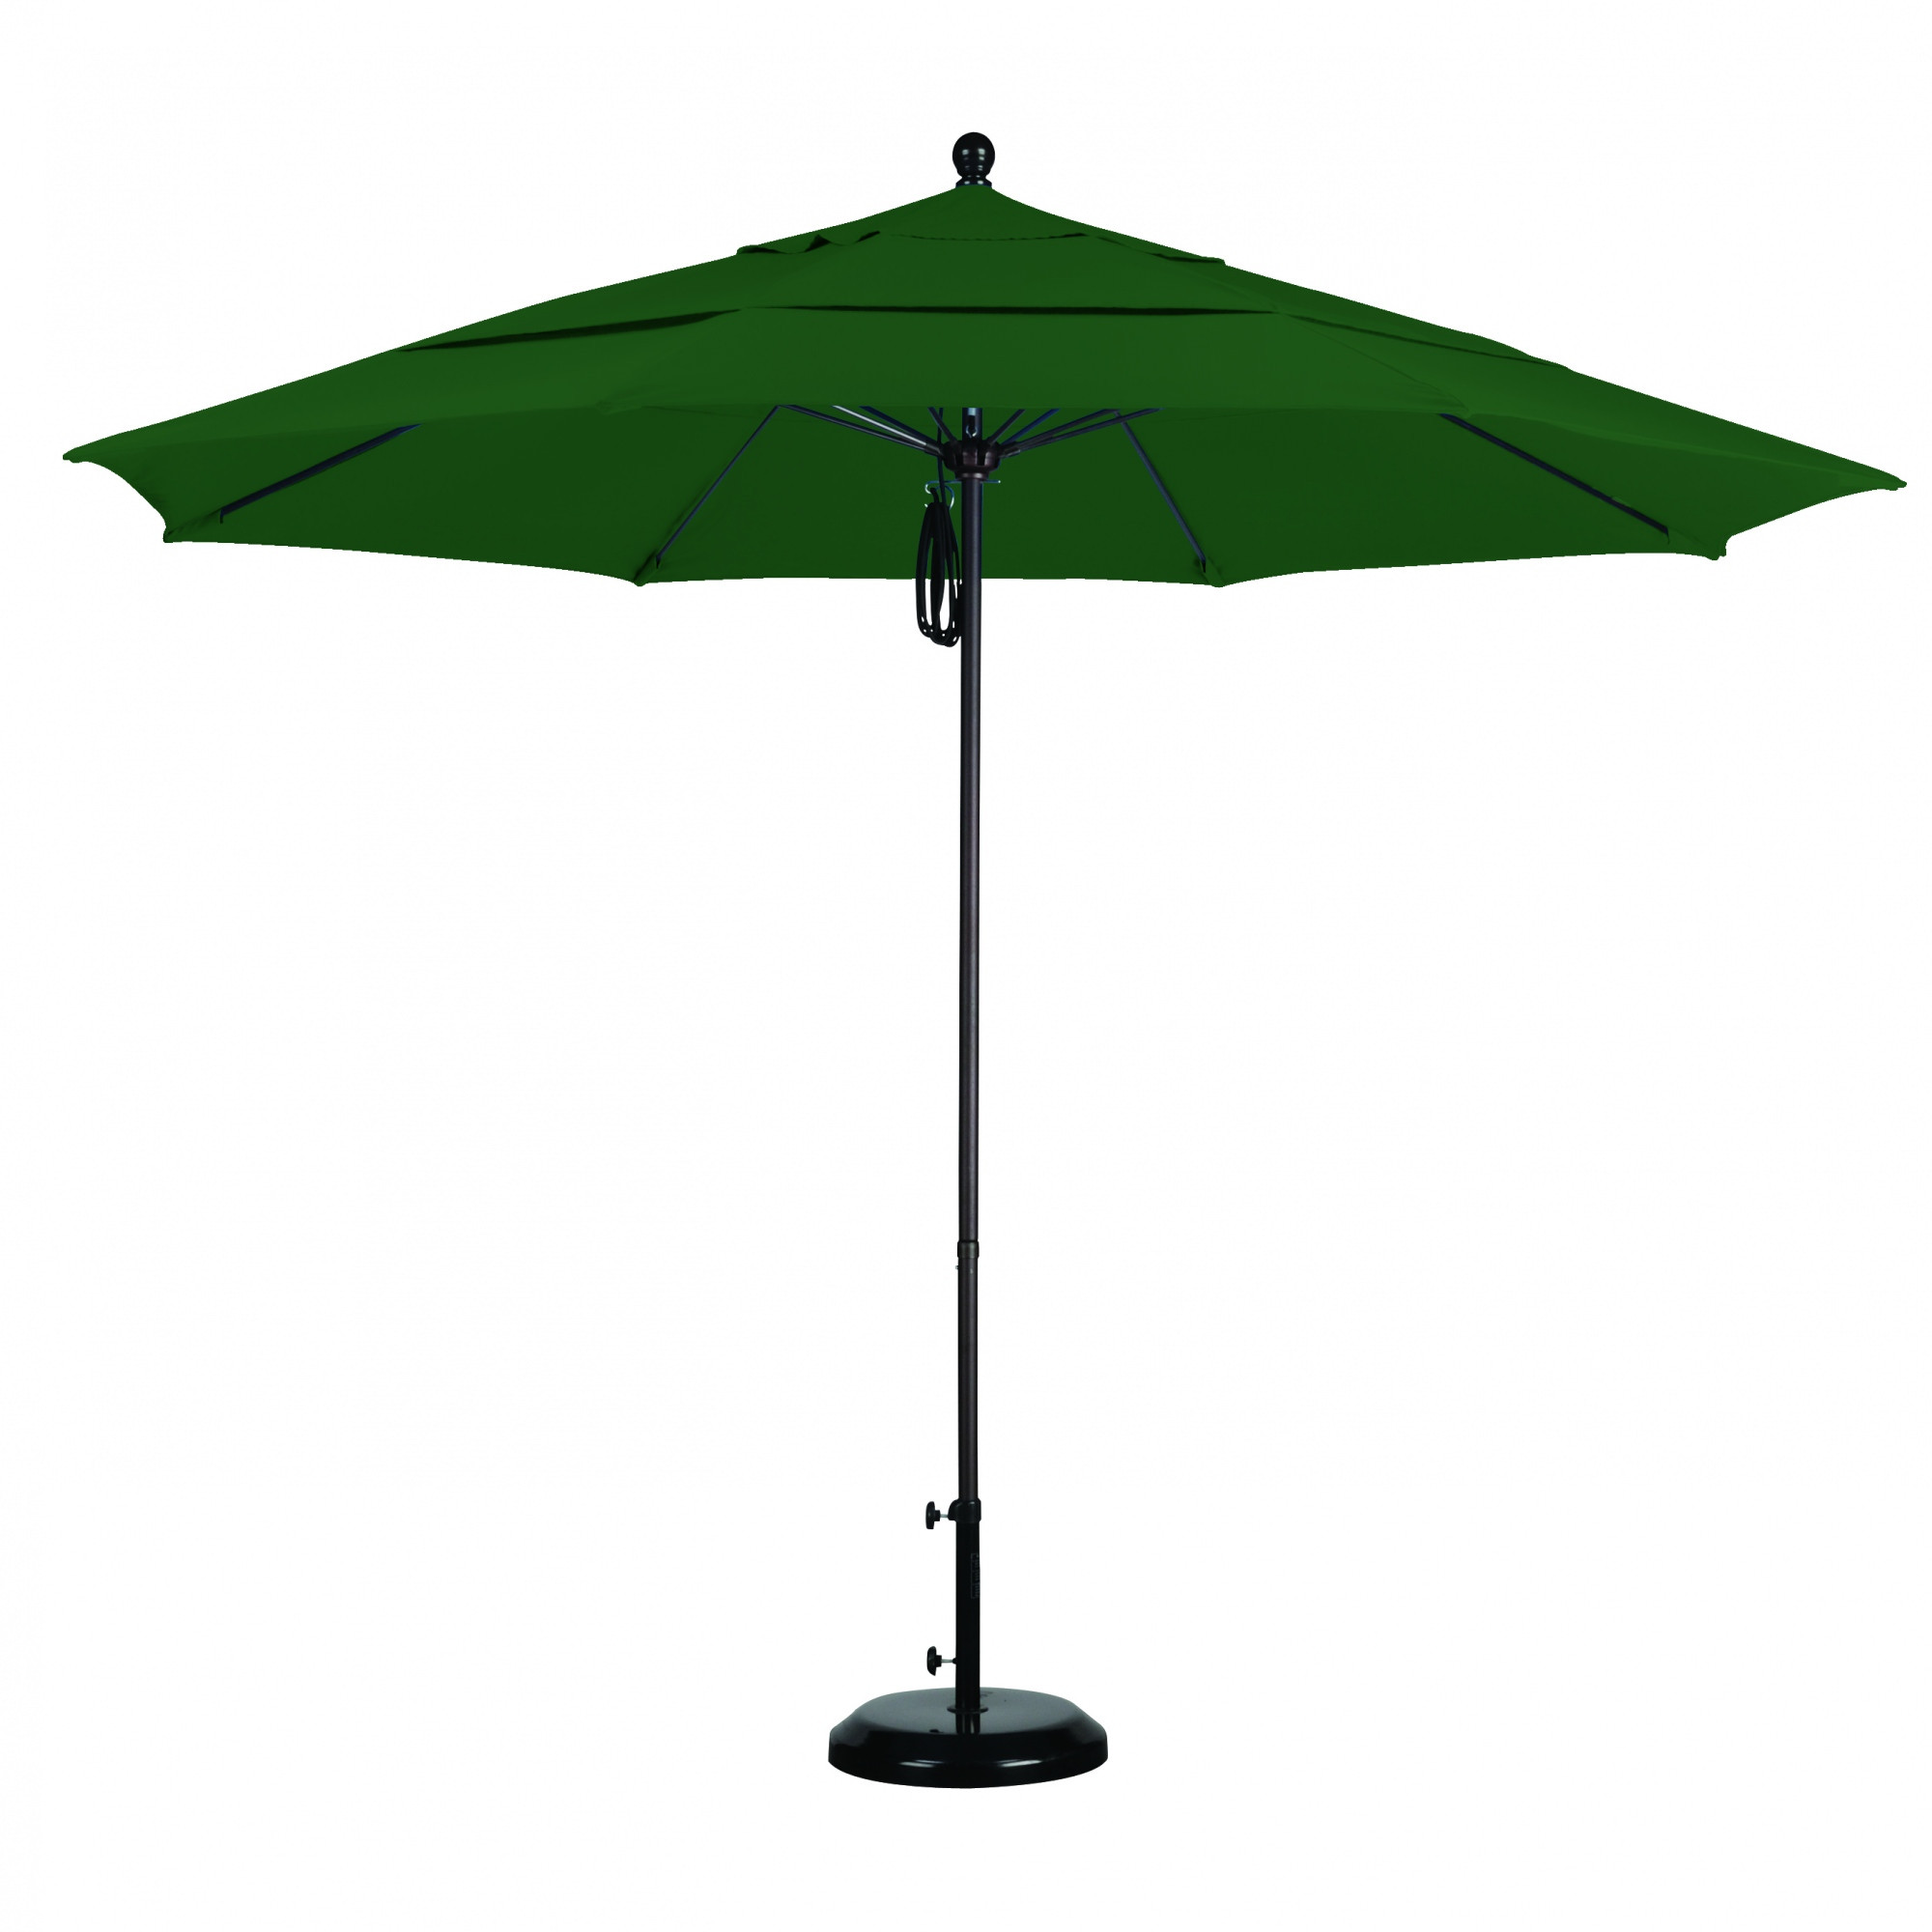 Best ideas about Sunbrella Patio Umbrellas
. Save or Pin 11 Ft Sunbrella Pulley Patio Umbrella with Bronze Pole Now.